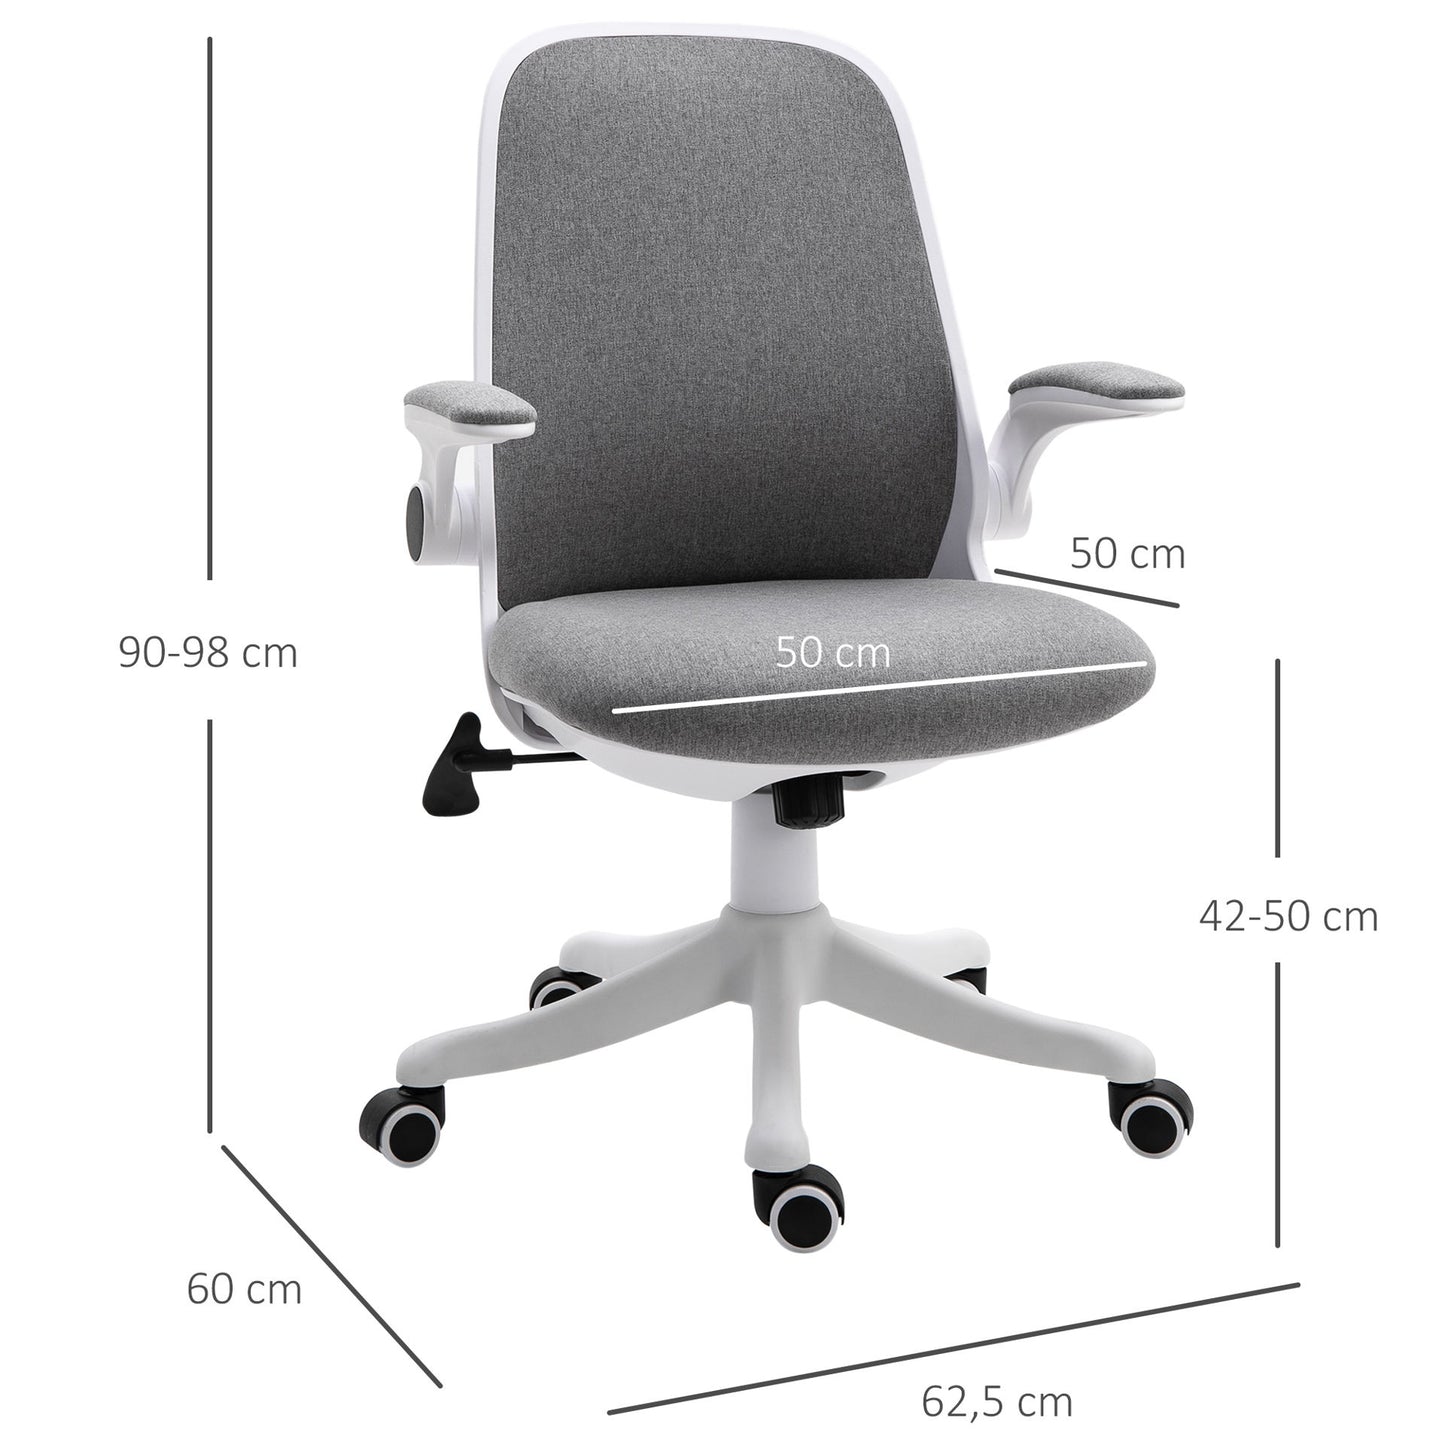 Nancy's Mount Hill Office chair - Gray, White - Foam, PVC, Nylon - 24.6 cm x 23.62 cm x 38.58 cm